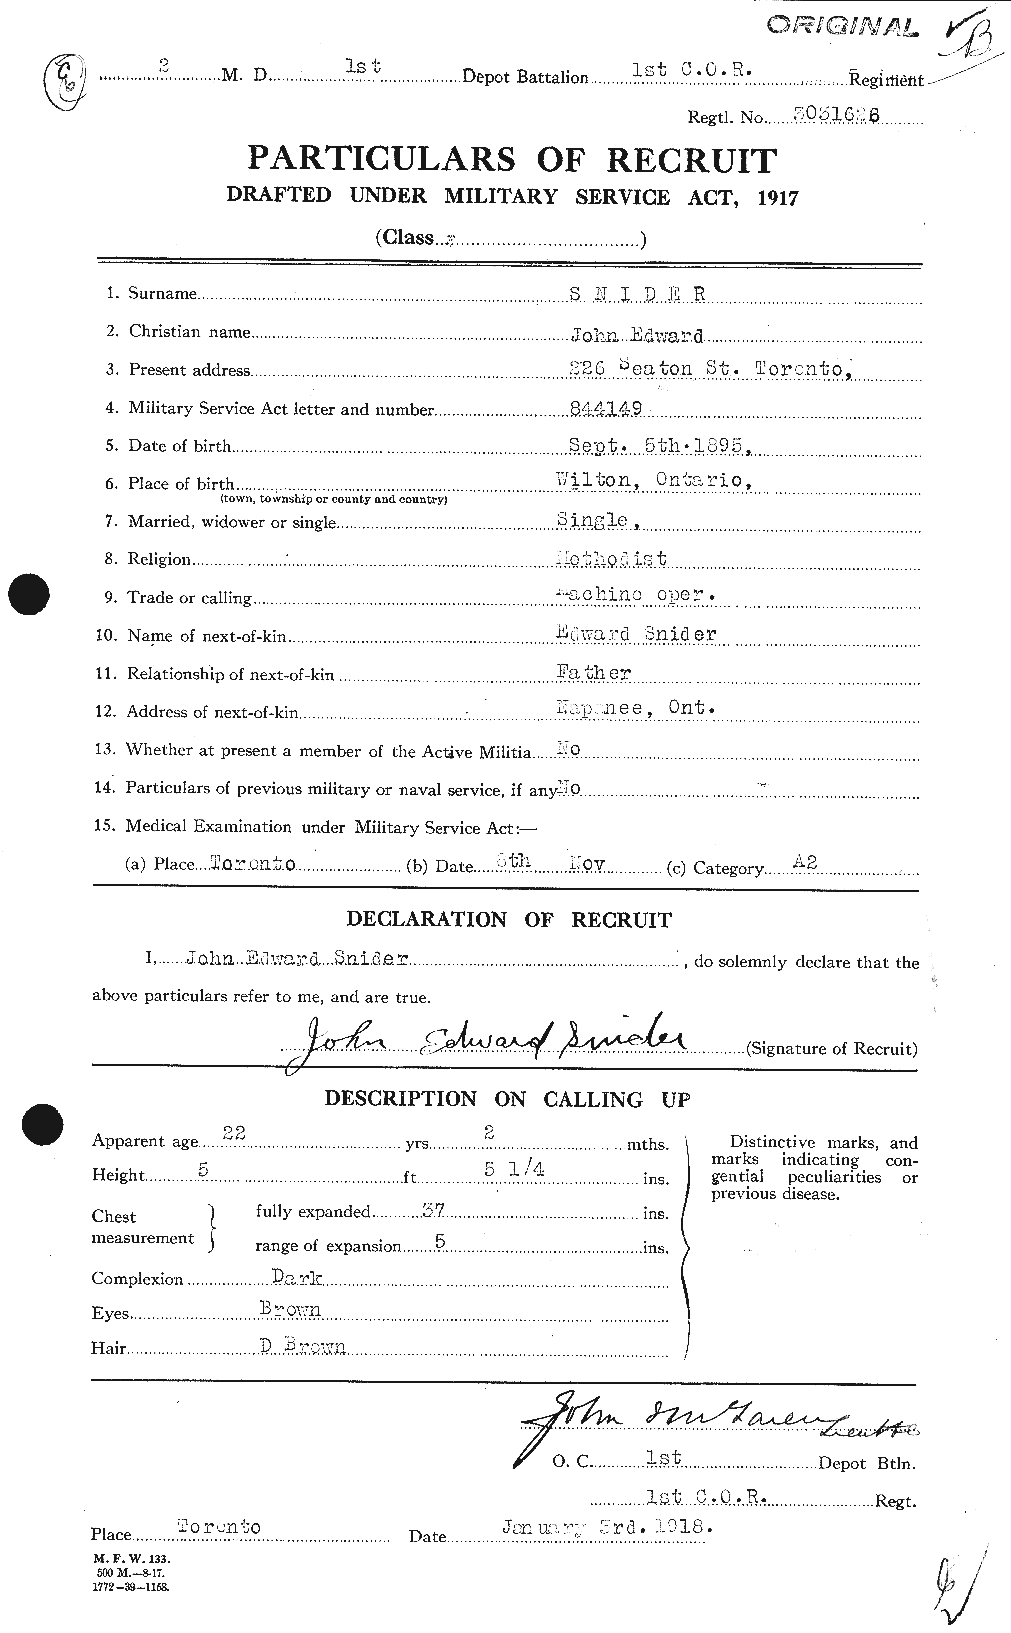 Dossiers du Personnel de la Première Guerre mondiale - CEC 110007a